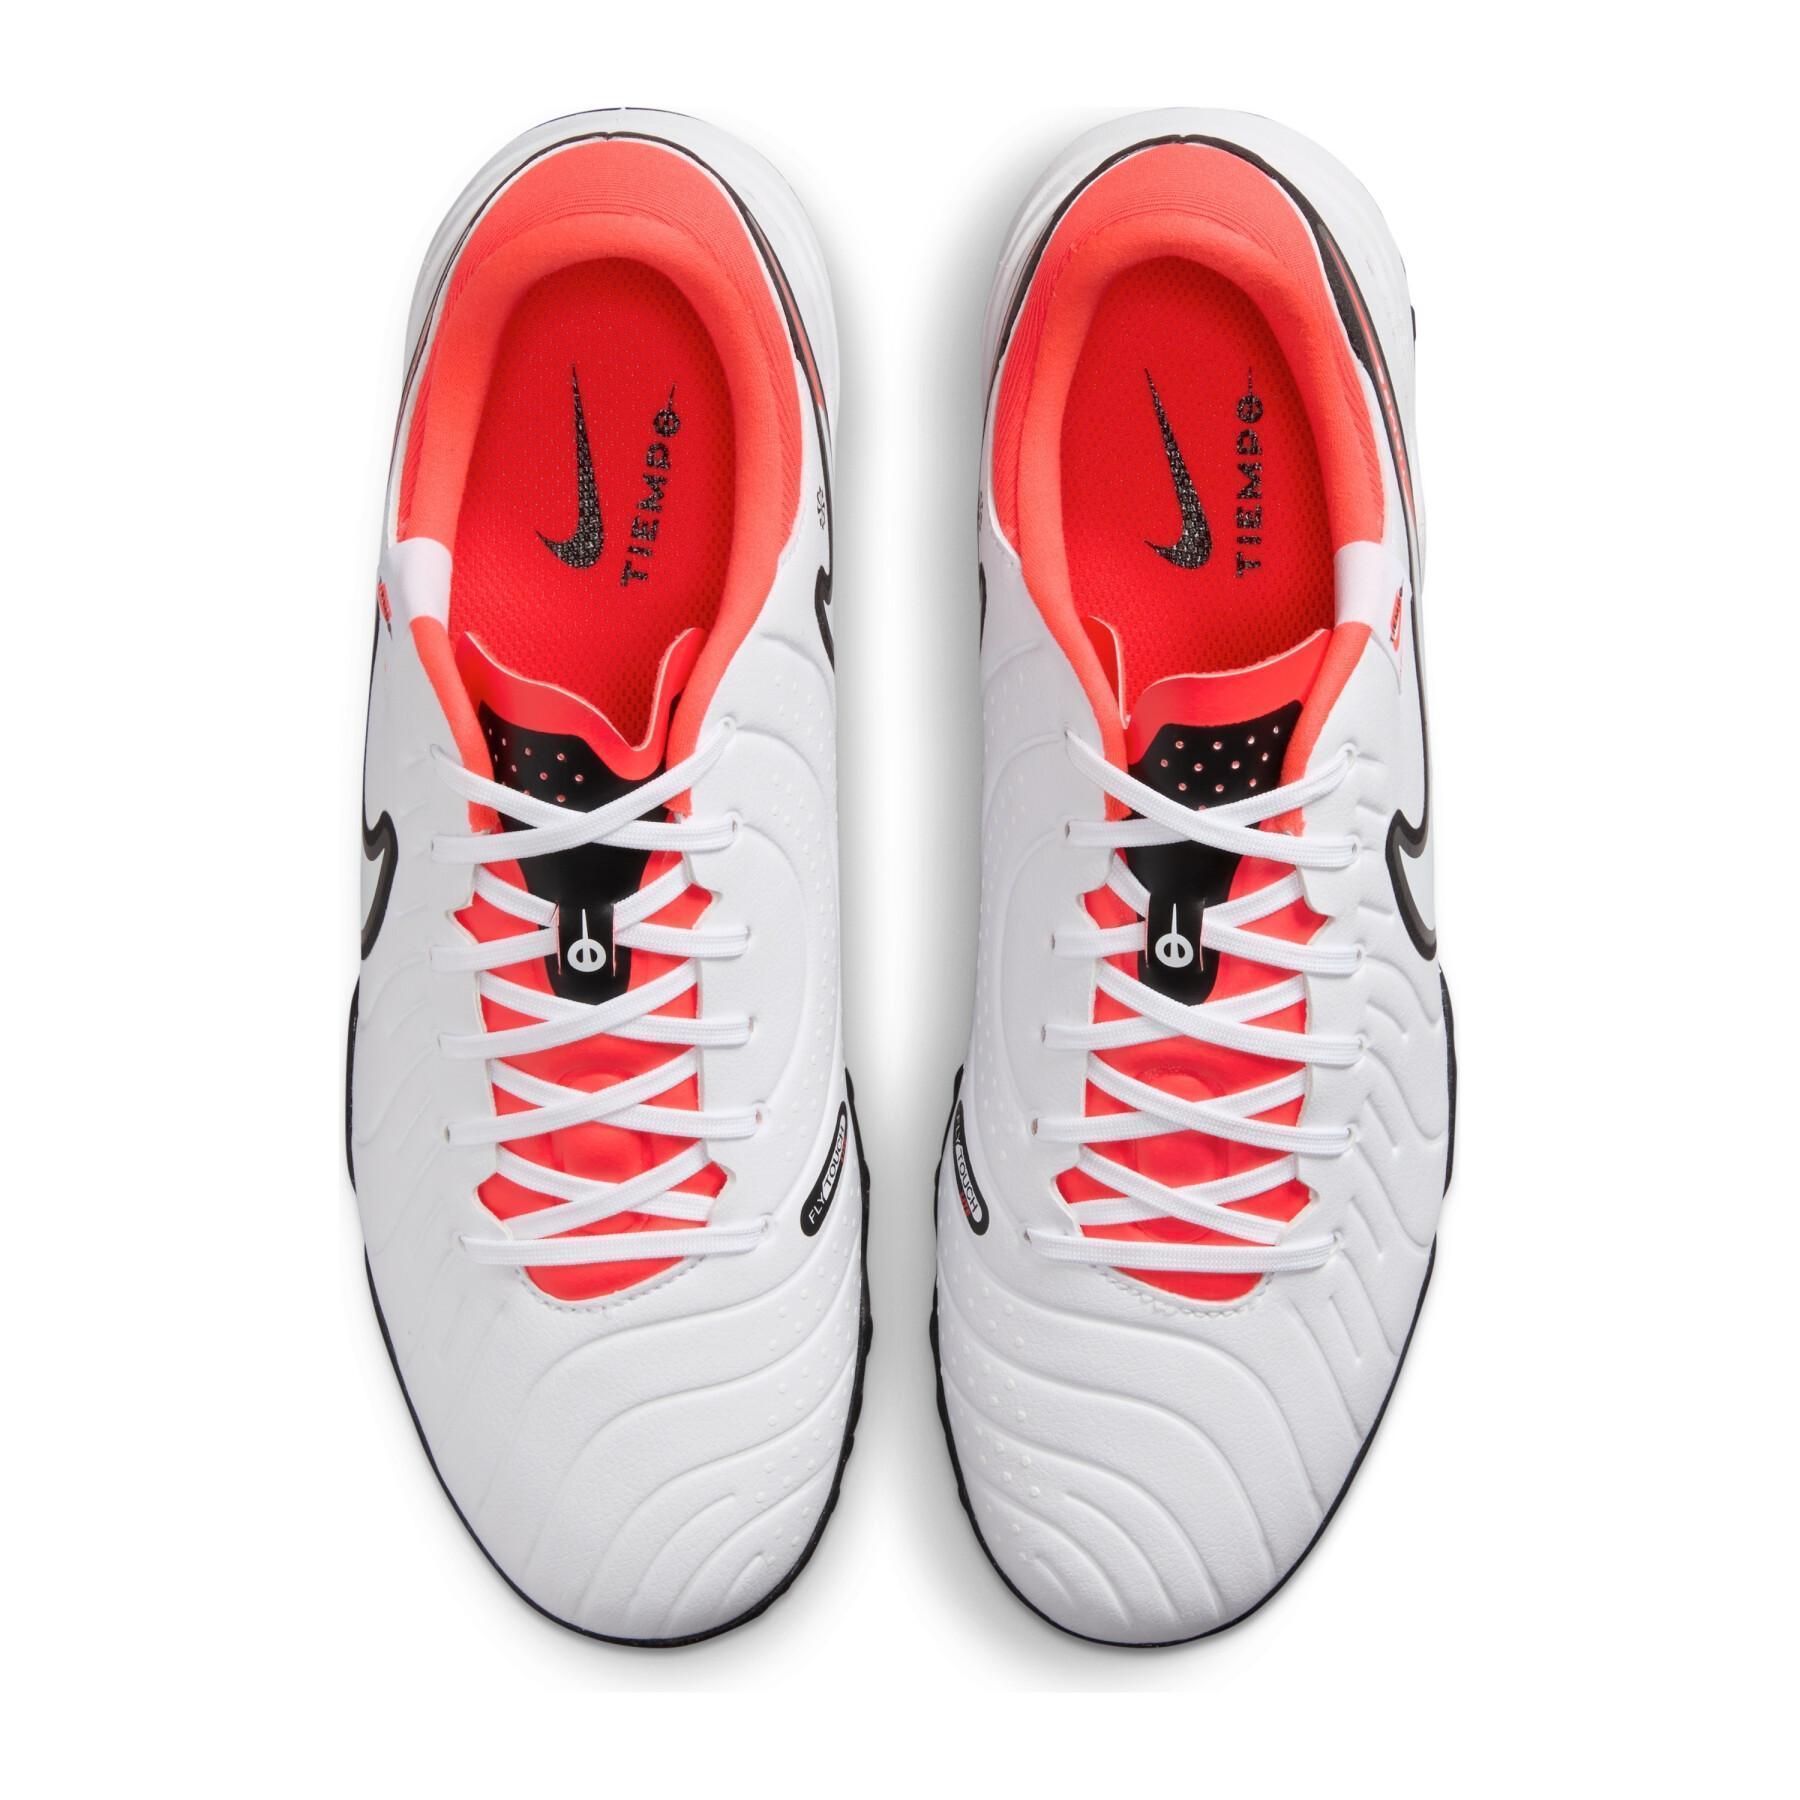 Sapatos de futebol Nike Tiempo Legend 10 Academy TF - Ready Pack